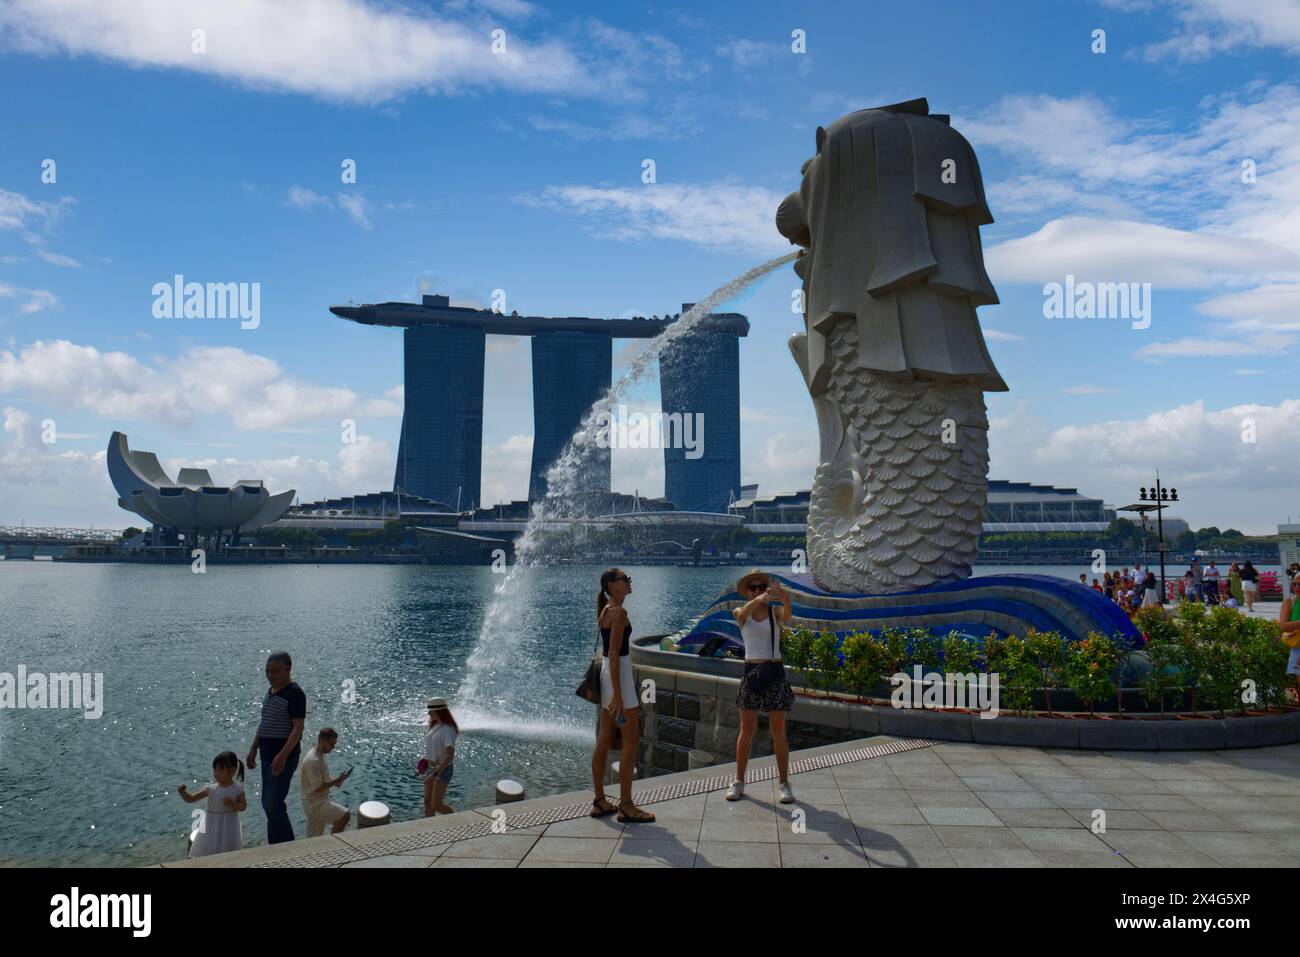 Persone che si godono il Merlion Park, il punto di riferimento di Singapore e l'attrazione turistica con la fontana della testa del leone sullo sfondo del resort Marina Bay Sands Foto Stock